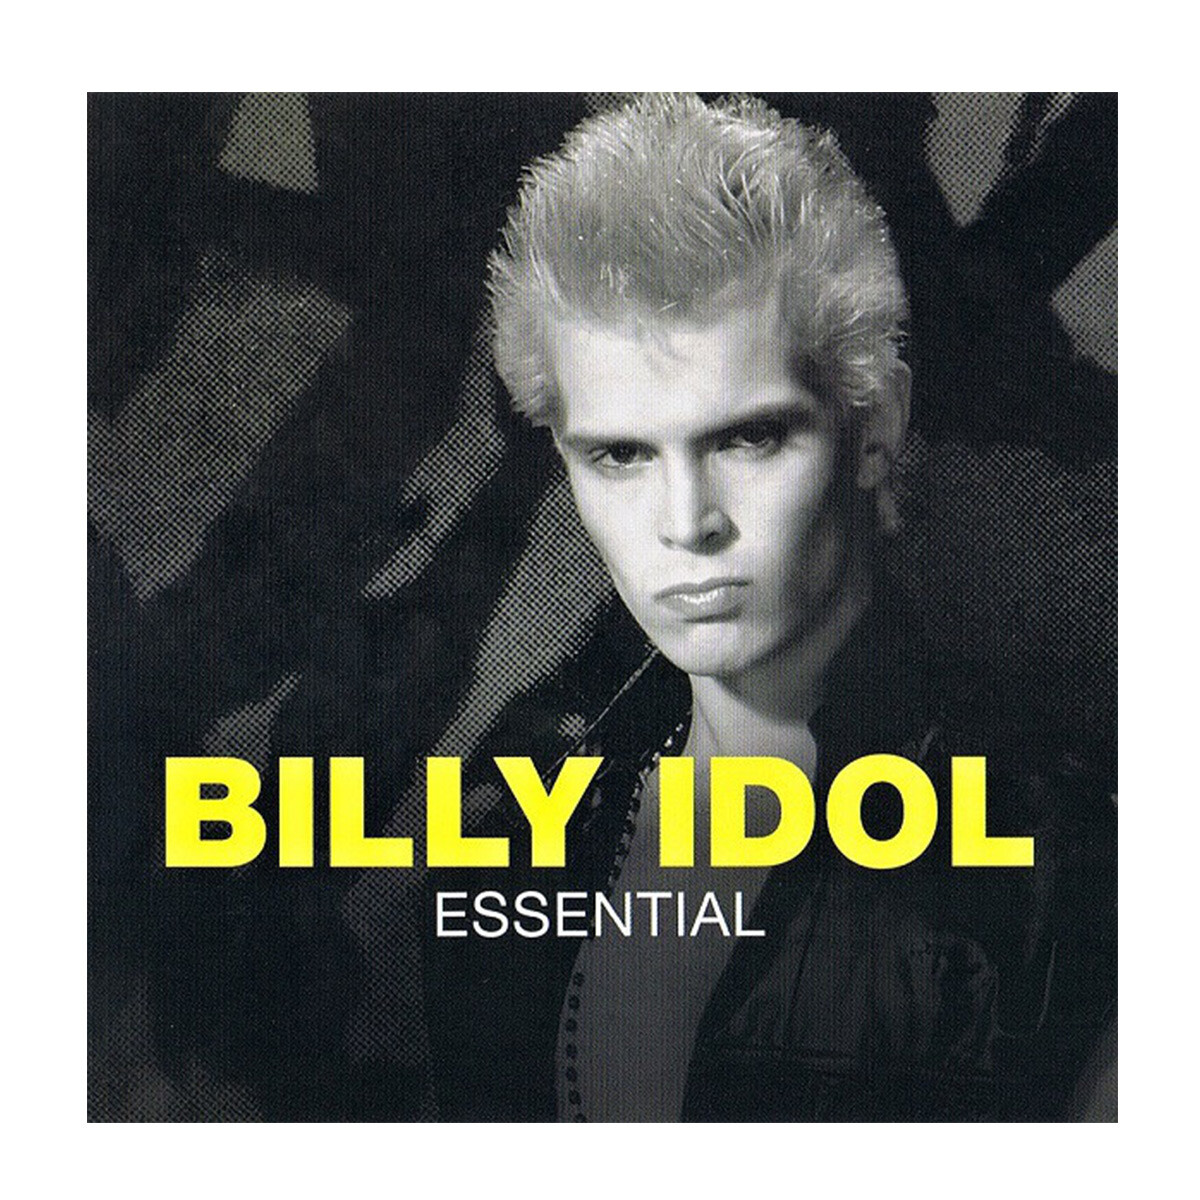 Billy Idol - Essential - Vinilo 